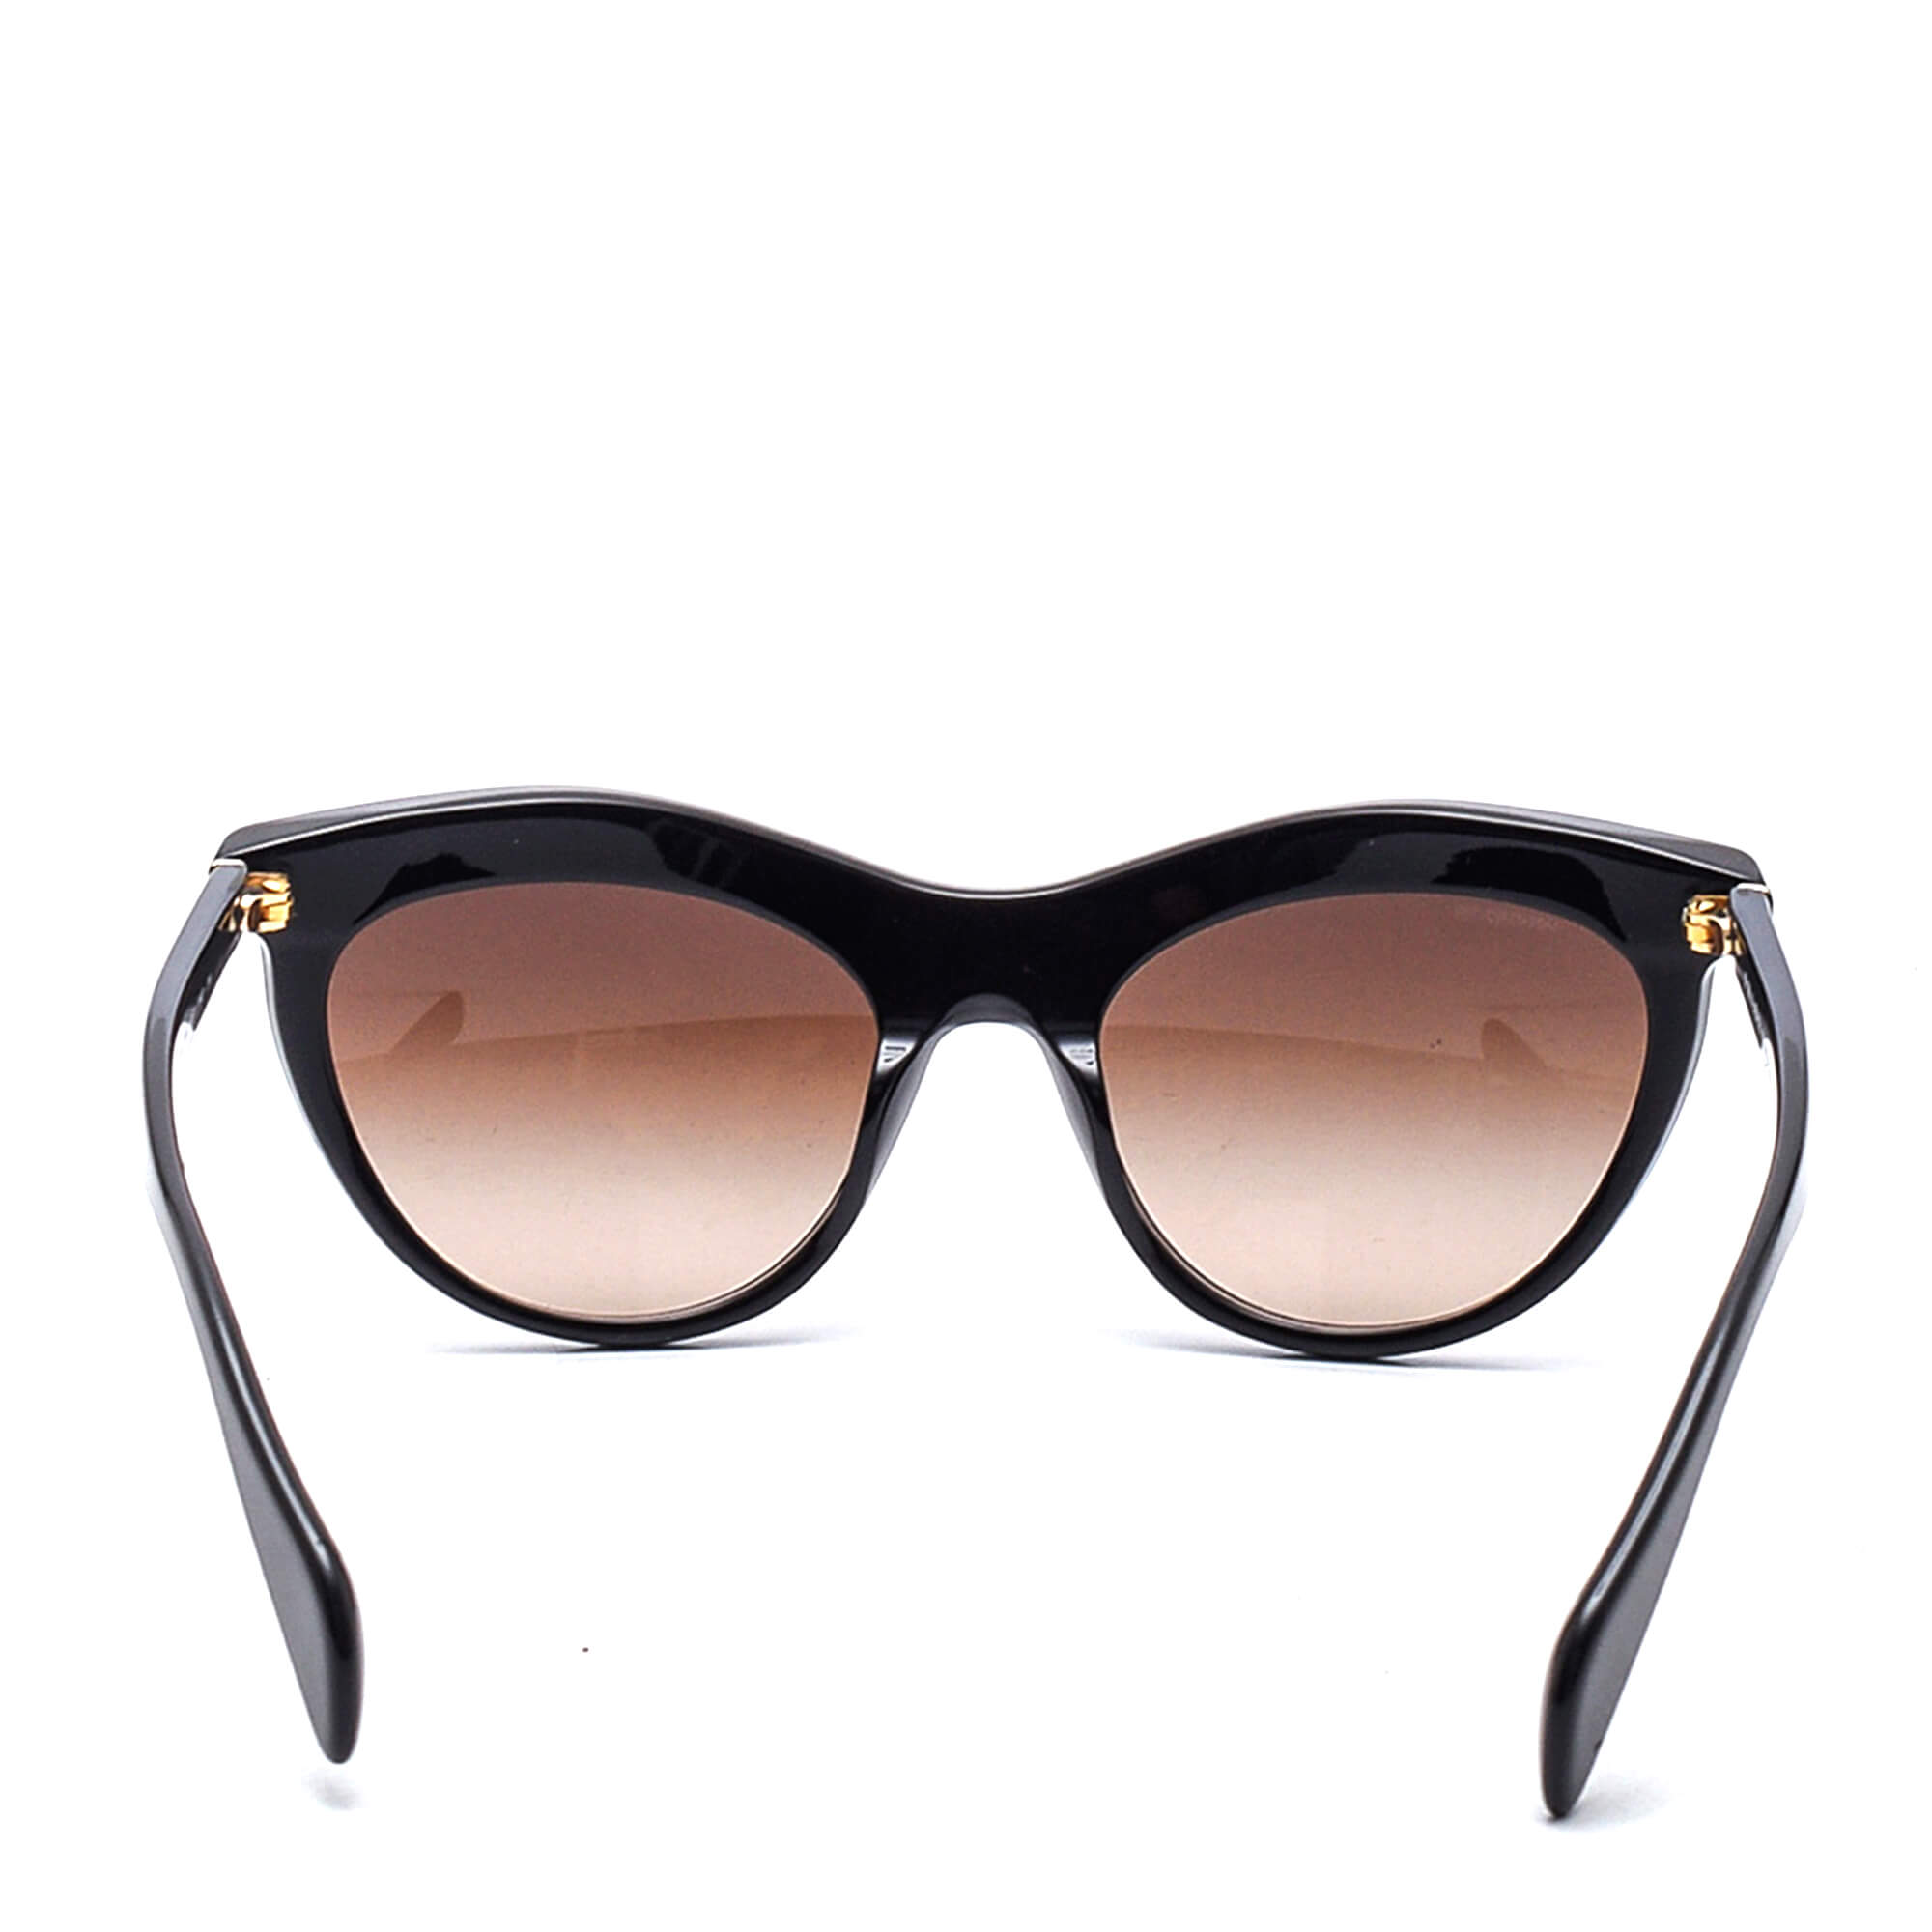 Prada - Black/Orange Strass Sunglasses